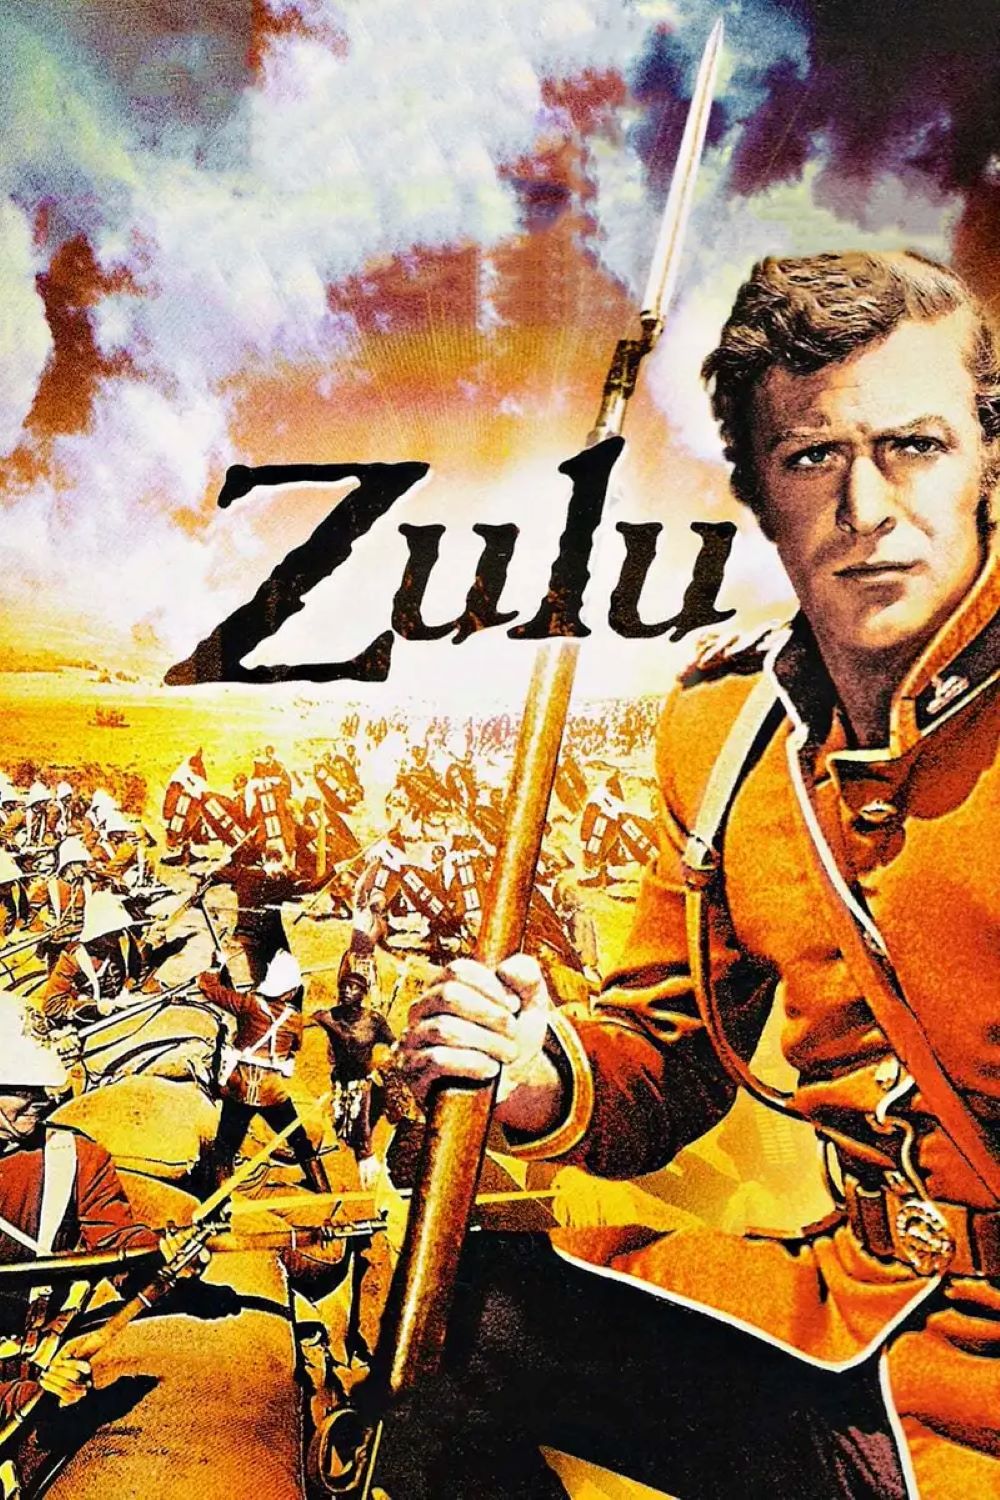 Read more about the article Godišnjica premijere povijesnog ratnog spektakla Zulu redatelja Cya Endfielda